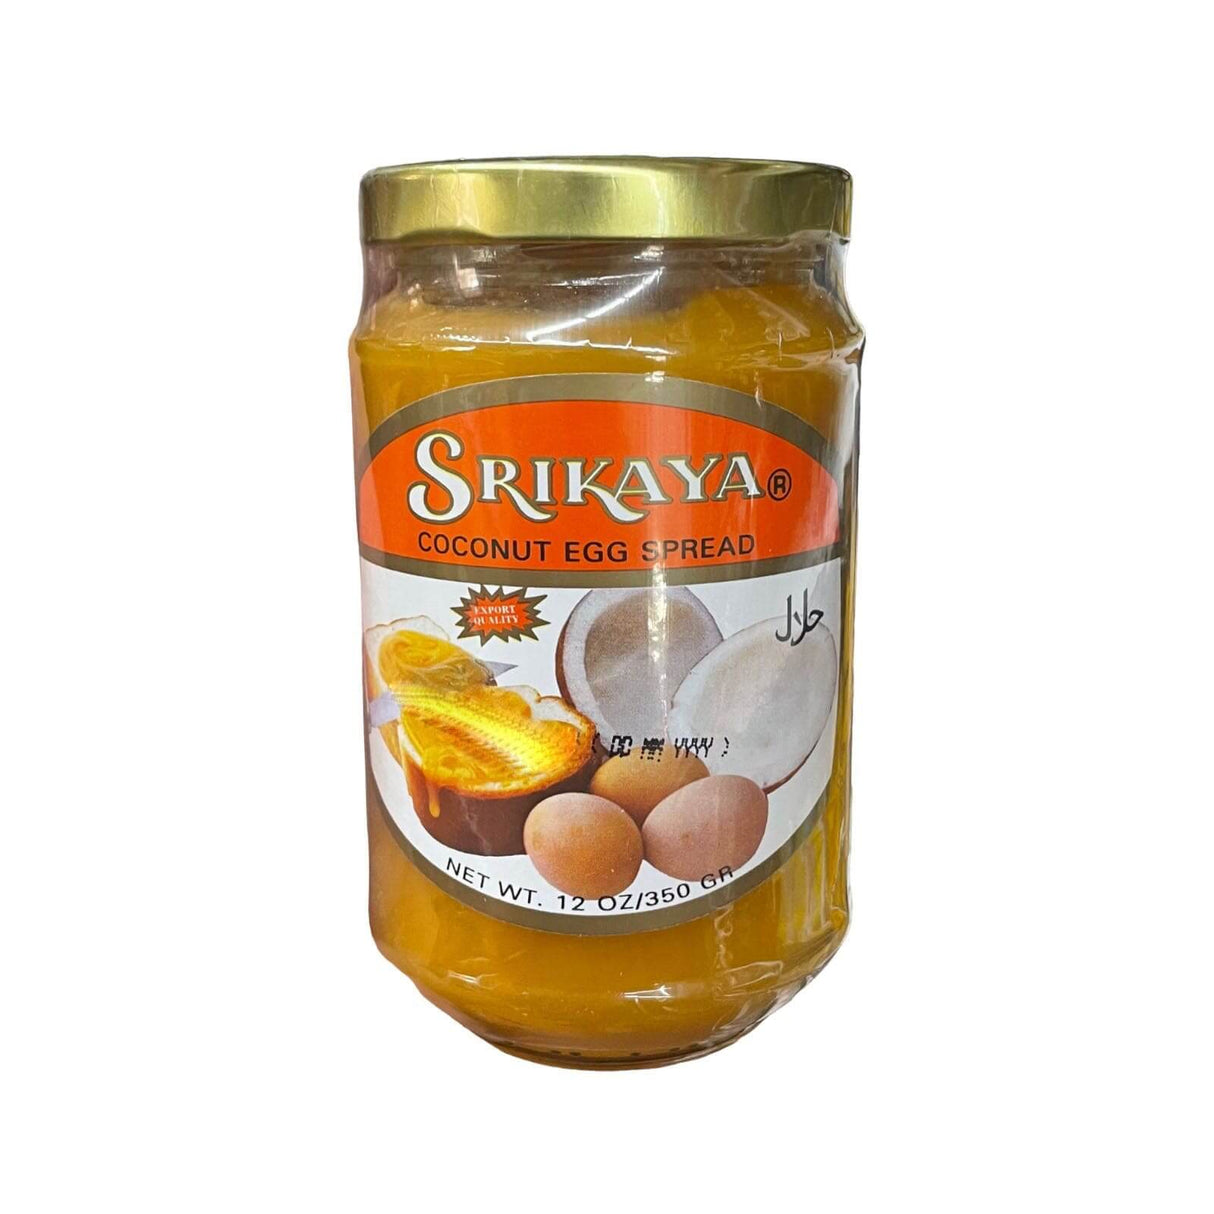 Srikaya Coconut Egg Spread